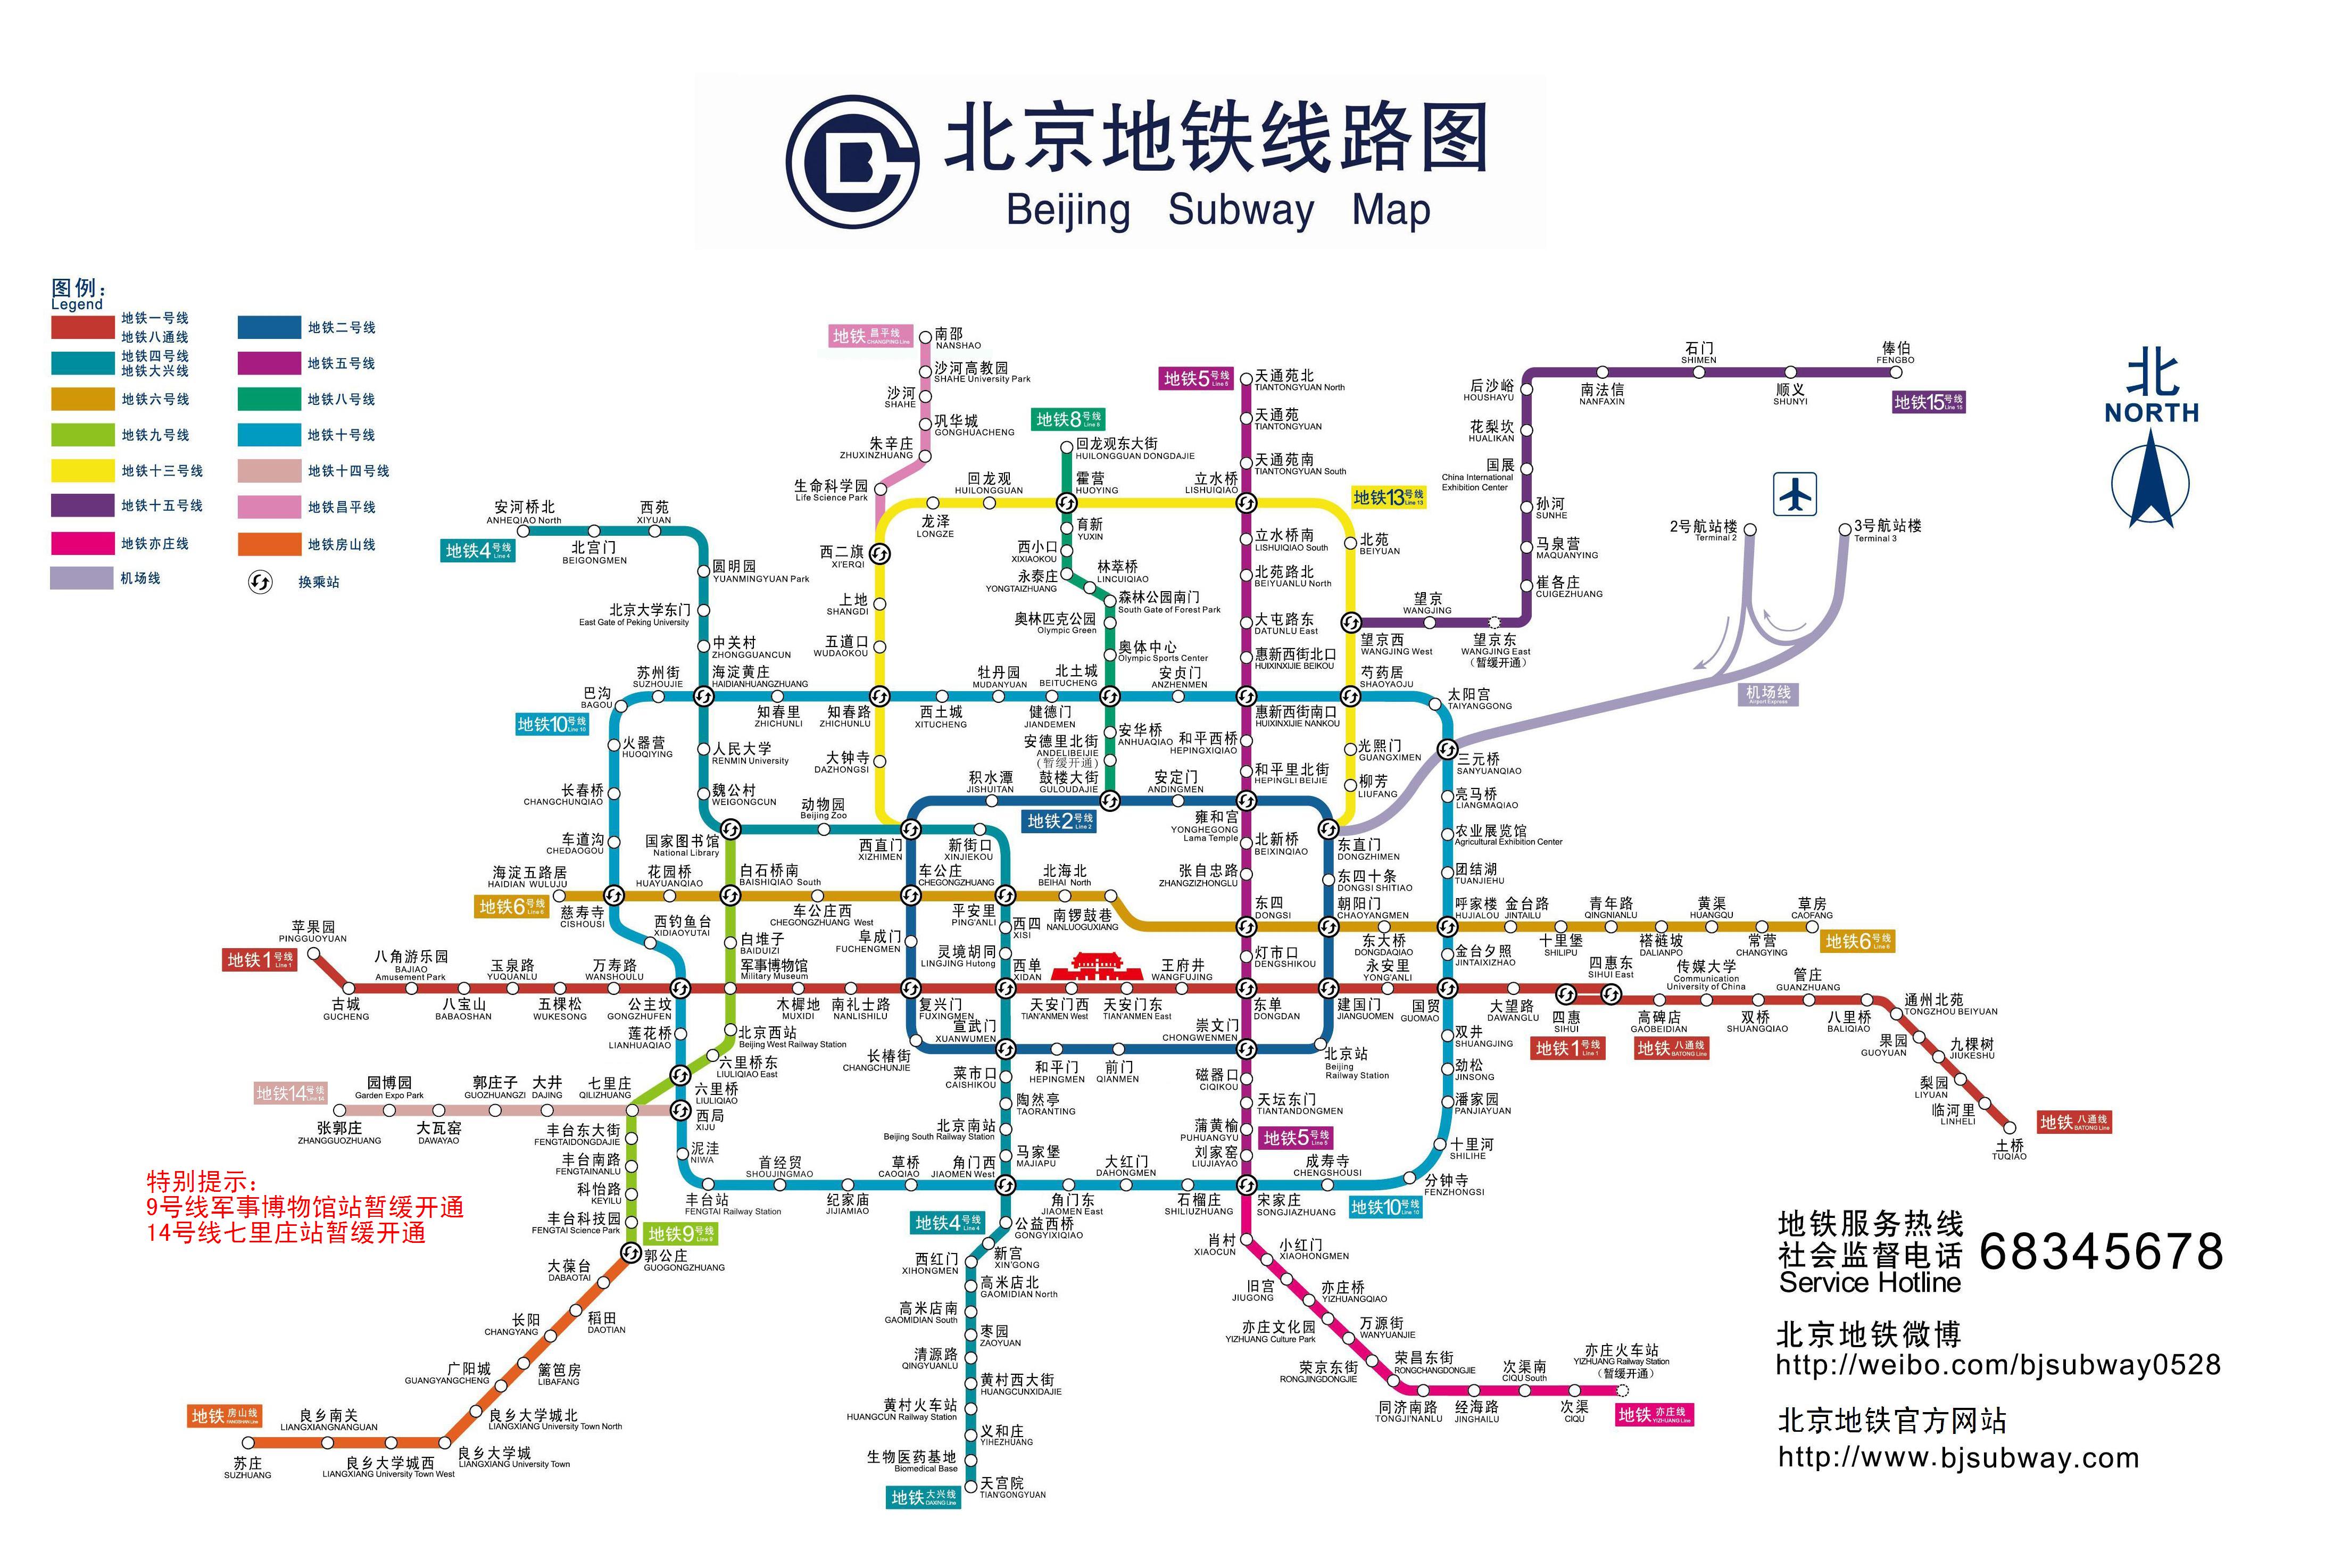 石济高铁开通啦 河北省十三五期间将建多条高速铁路-长城原创-长城网